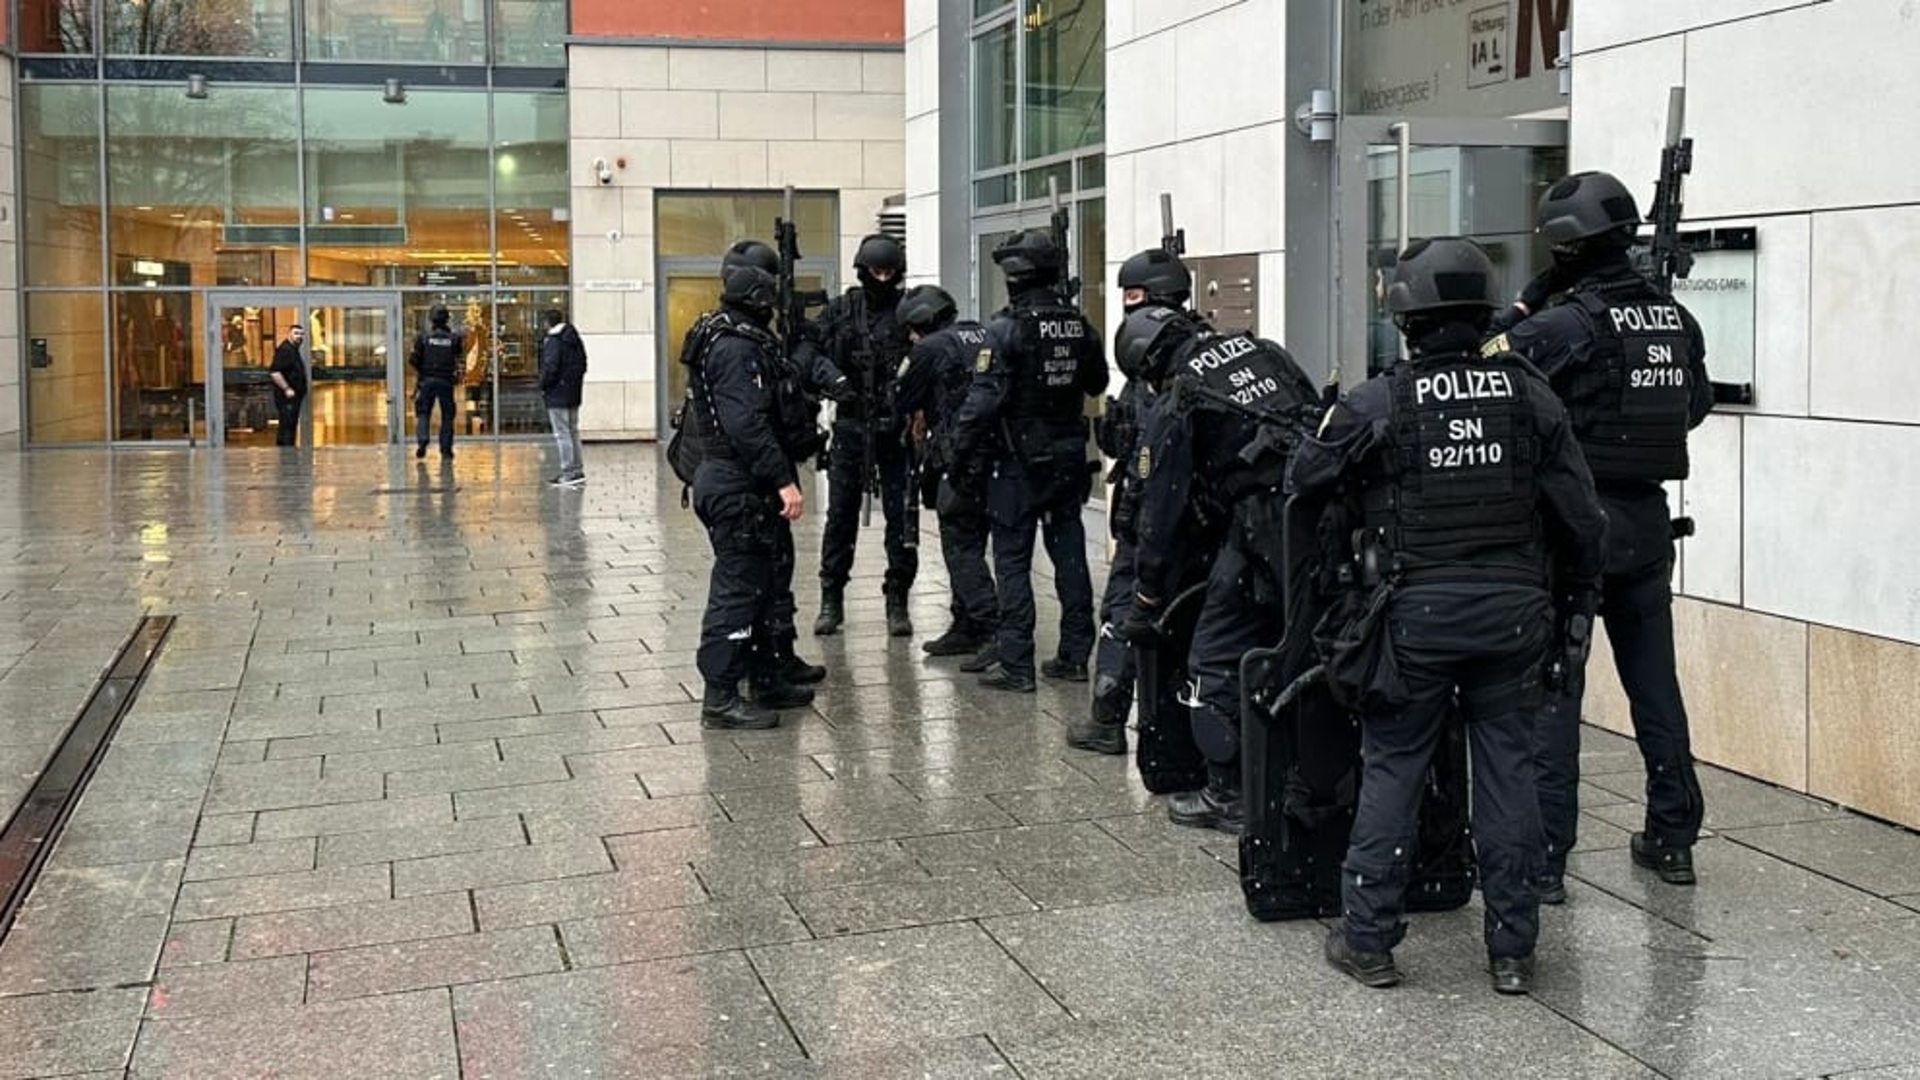 Вооруженное нападение в здании. Спецназ полиции. Полиция Германии. Освобождение заложников.